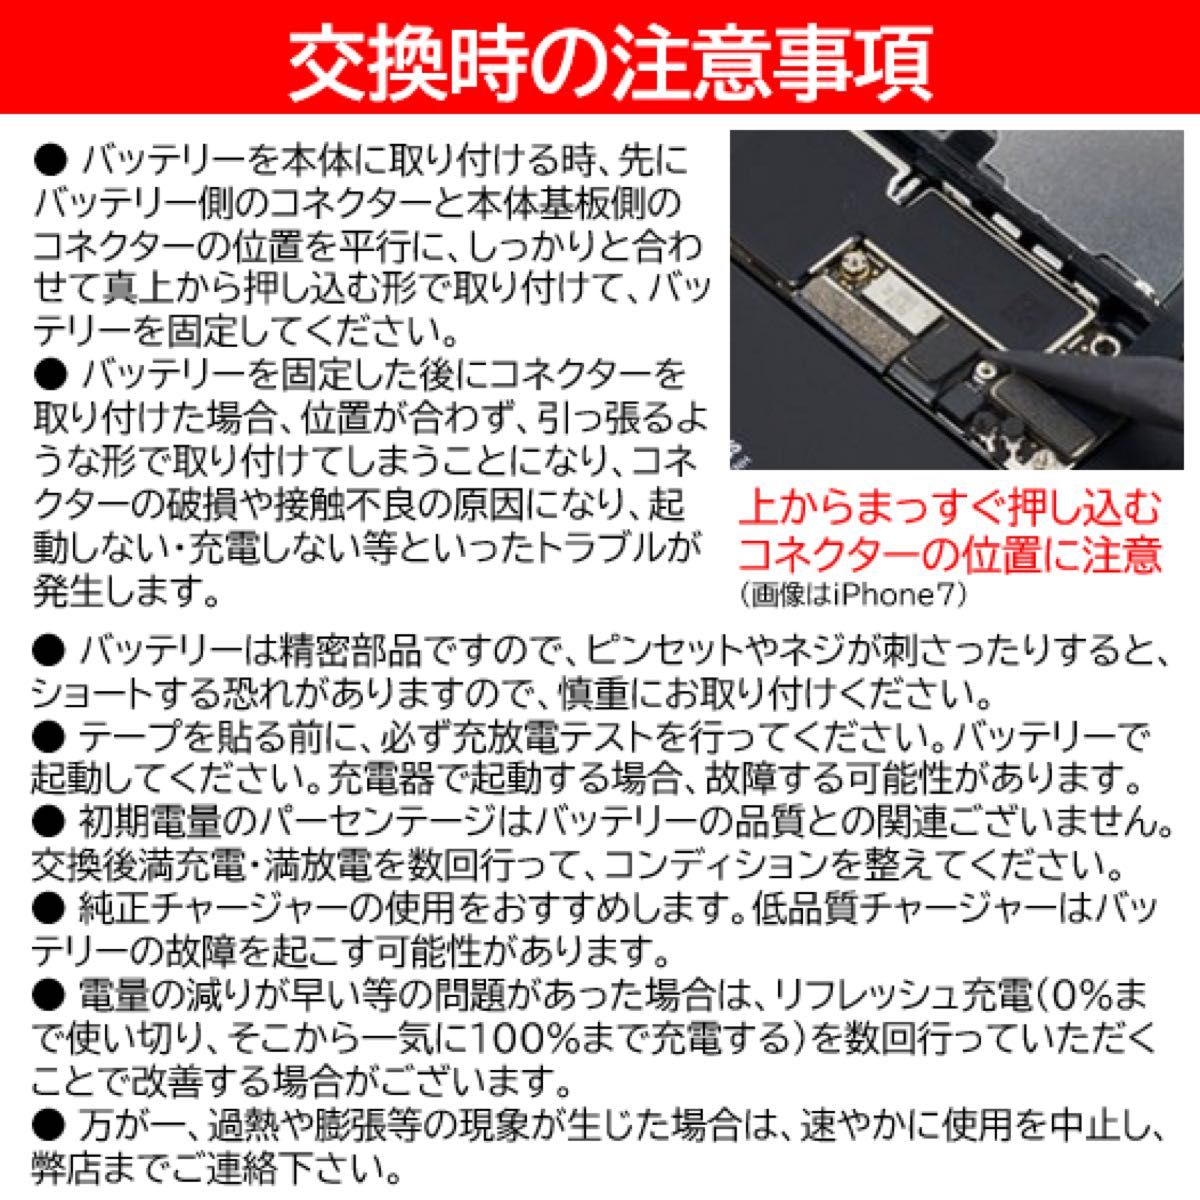 【新品】iPhone6S バッテリー 交換用 PSE認証済 工具・保証付